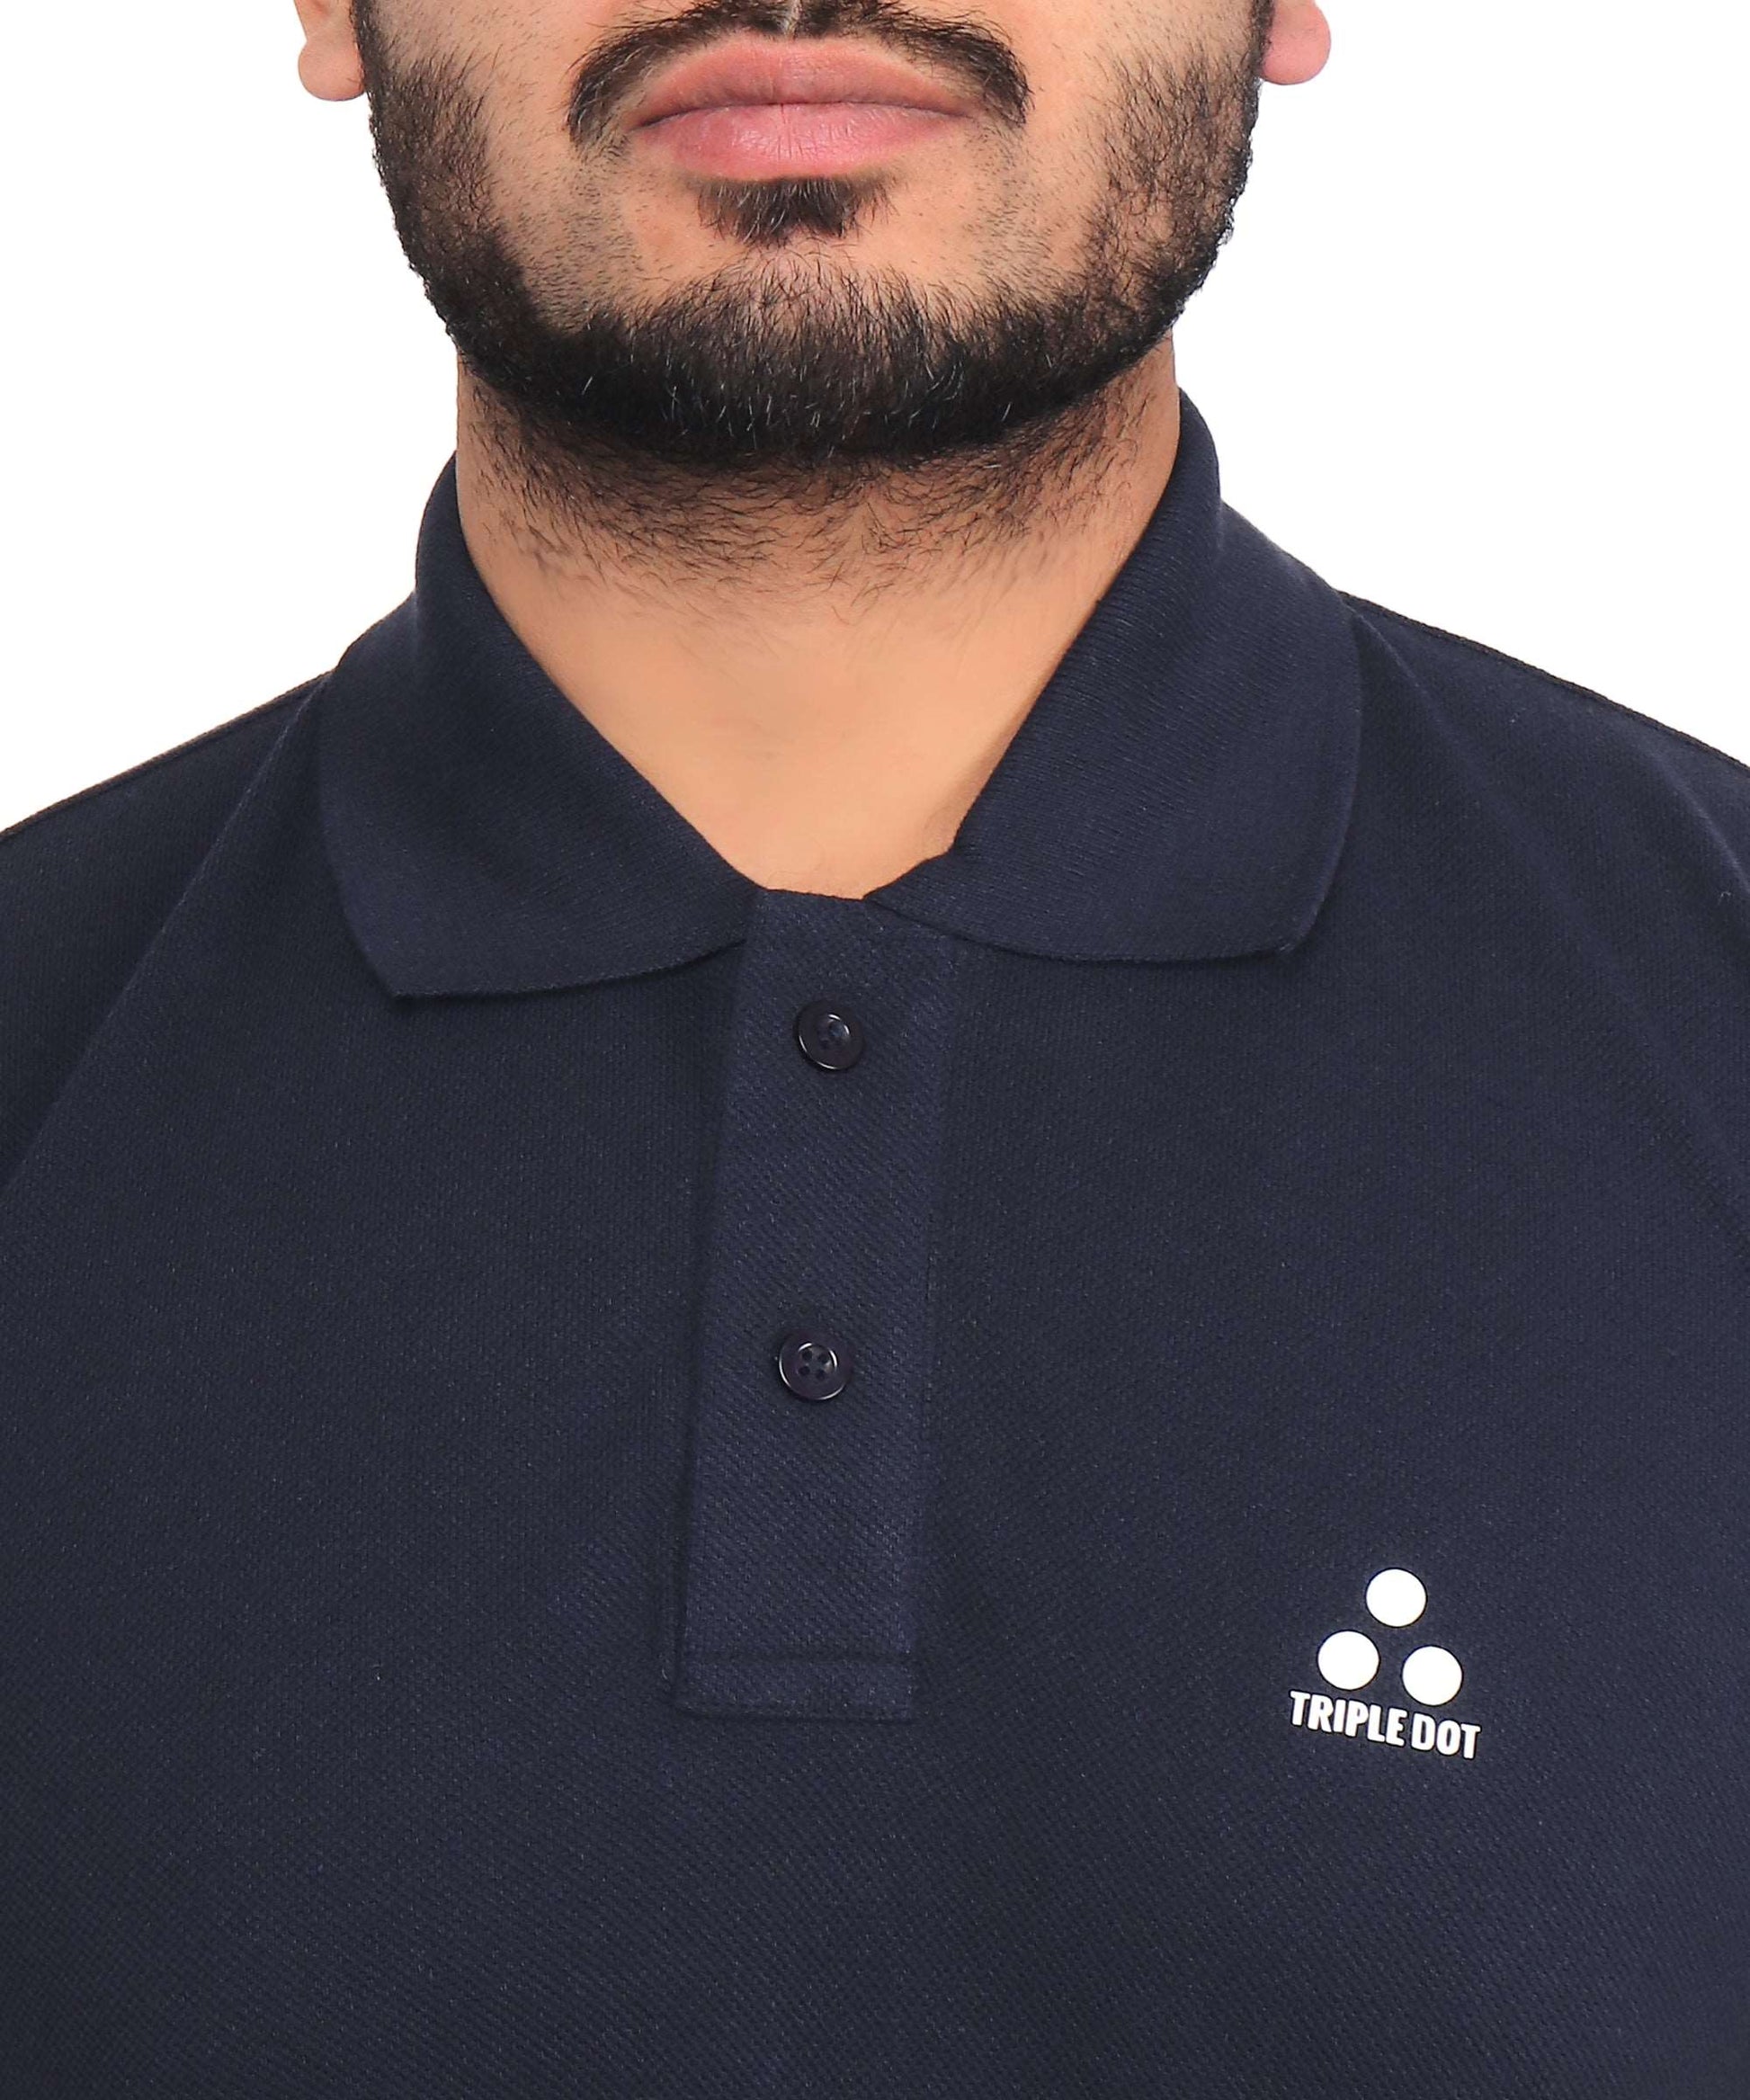 Triple Dot Double Pique Navy Blue Polycotton Premium Polo T shirt for Men